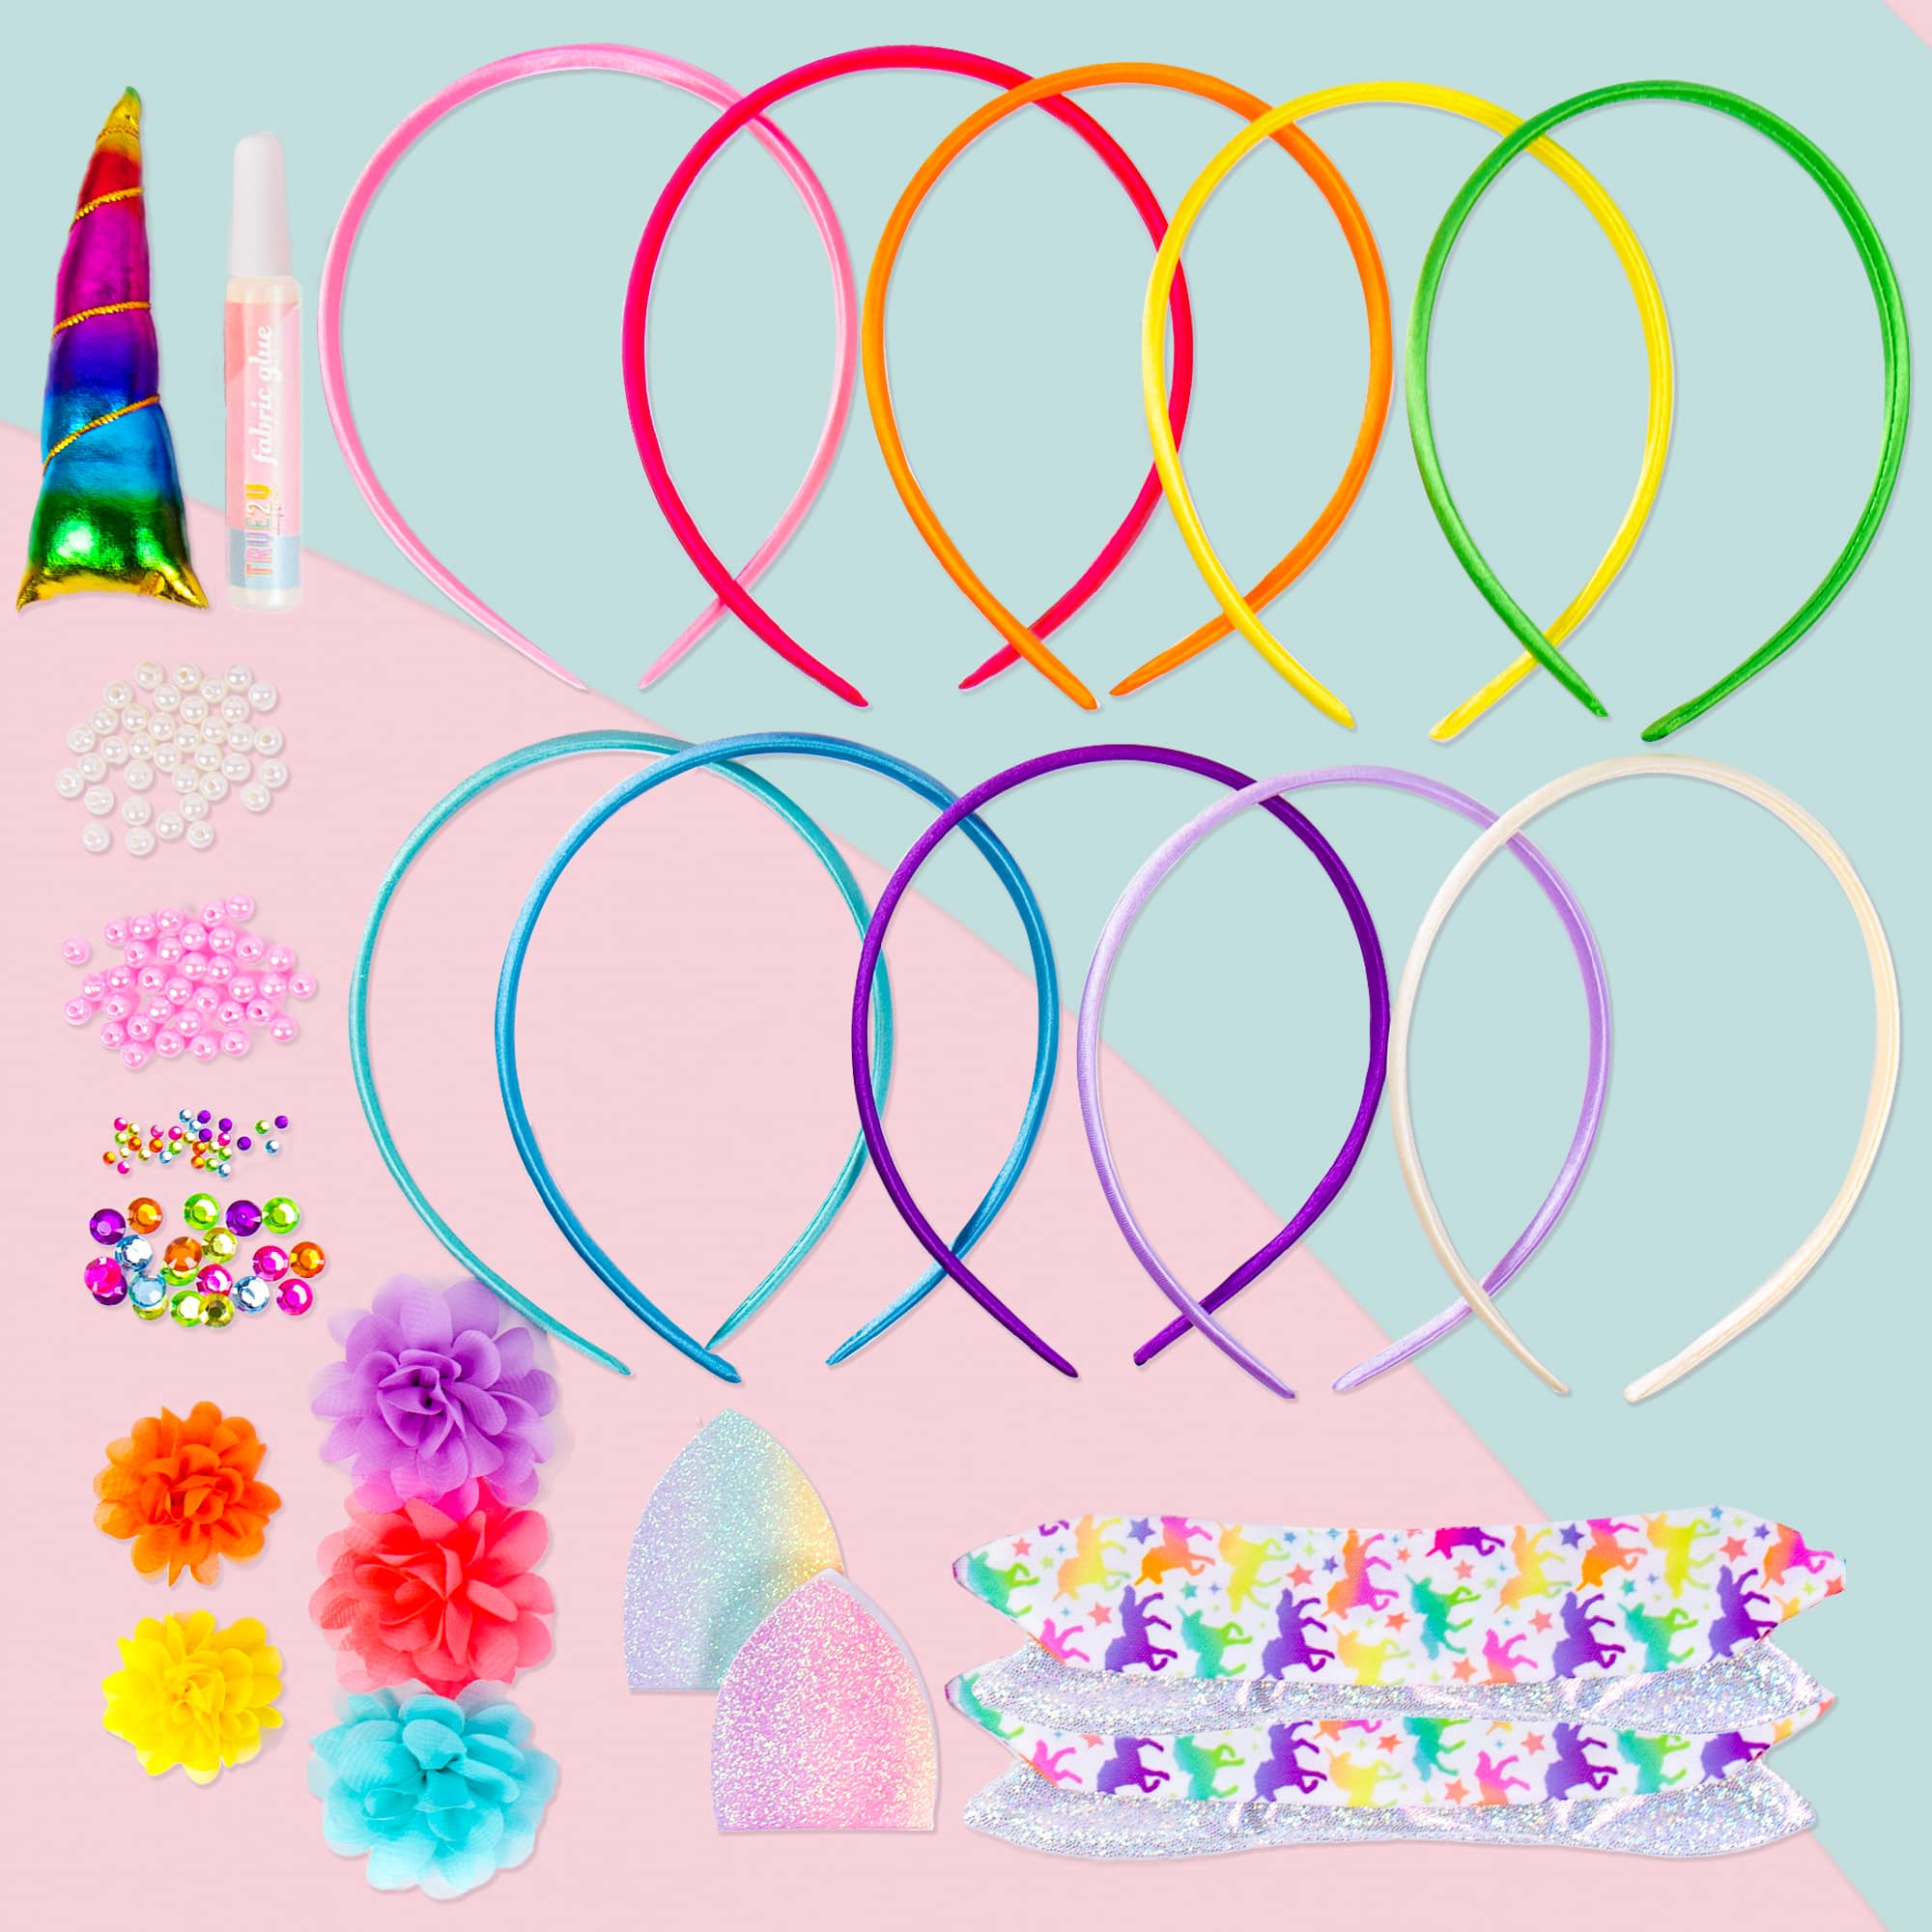 Rainbow Bead Kit Box by Creatology™